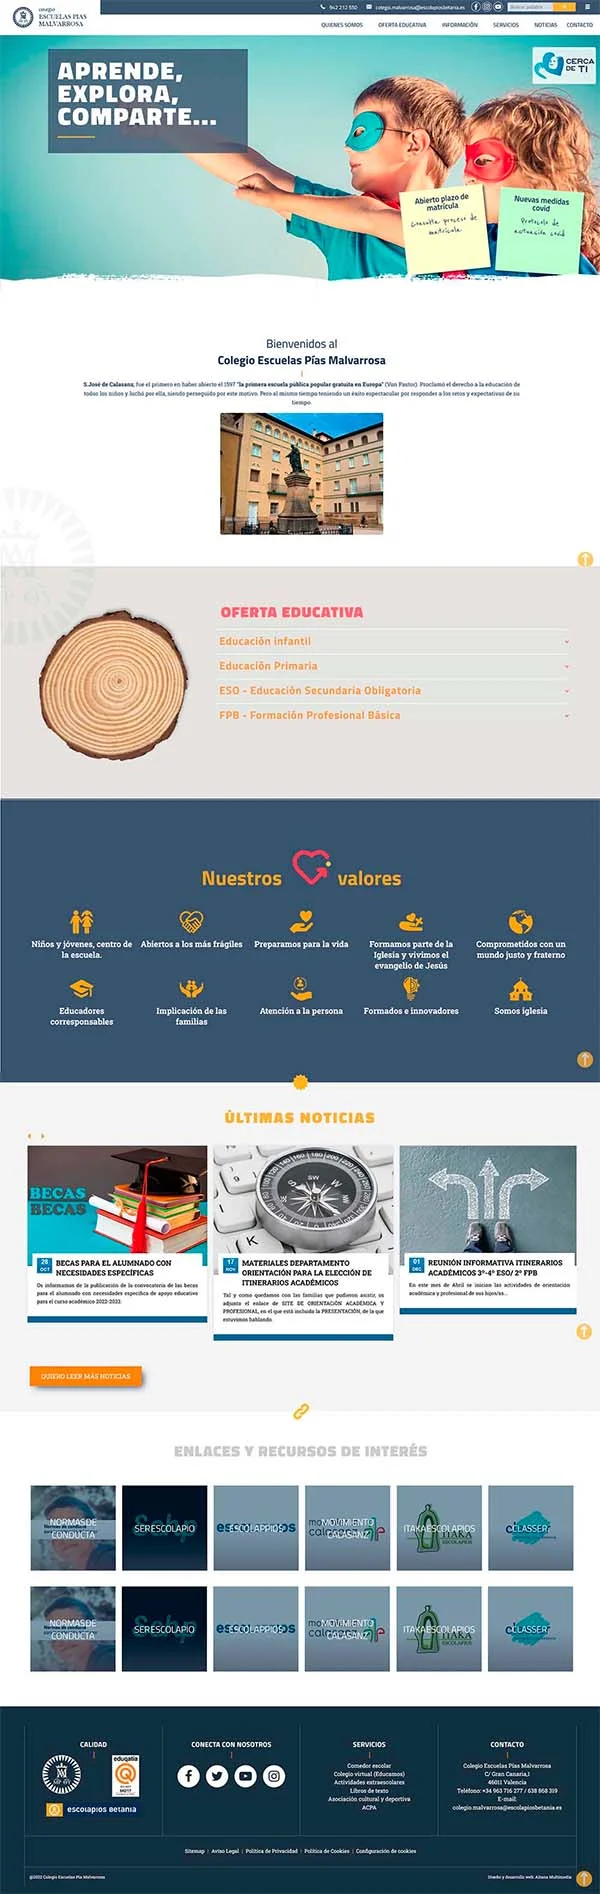 Diseño Página web CENTROS EDUCATIVOS - Colegio Escuelas Pías Malvarrosa